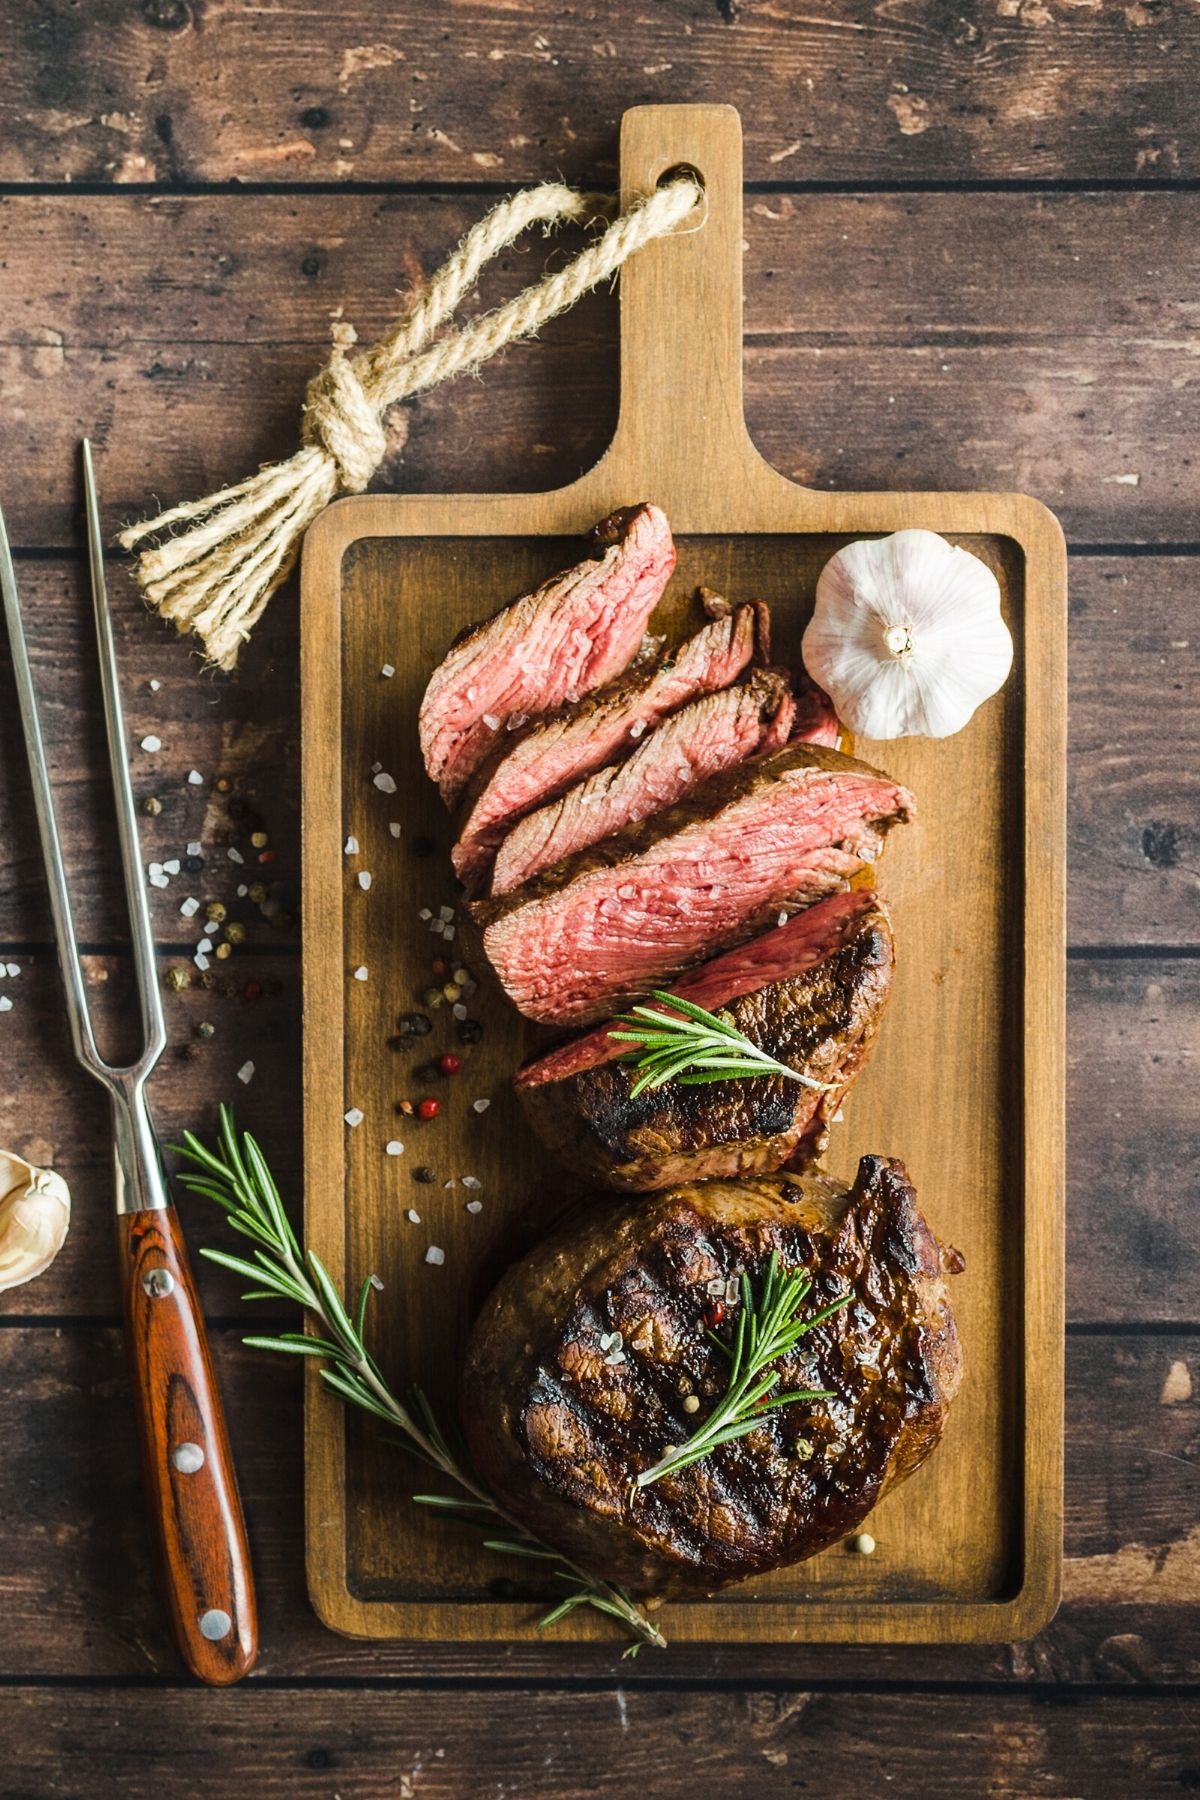 sliced steak on a table